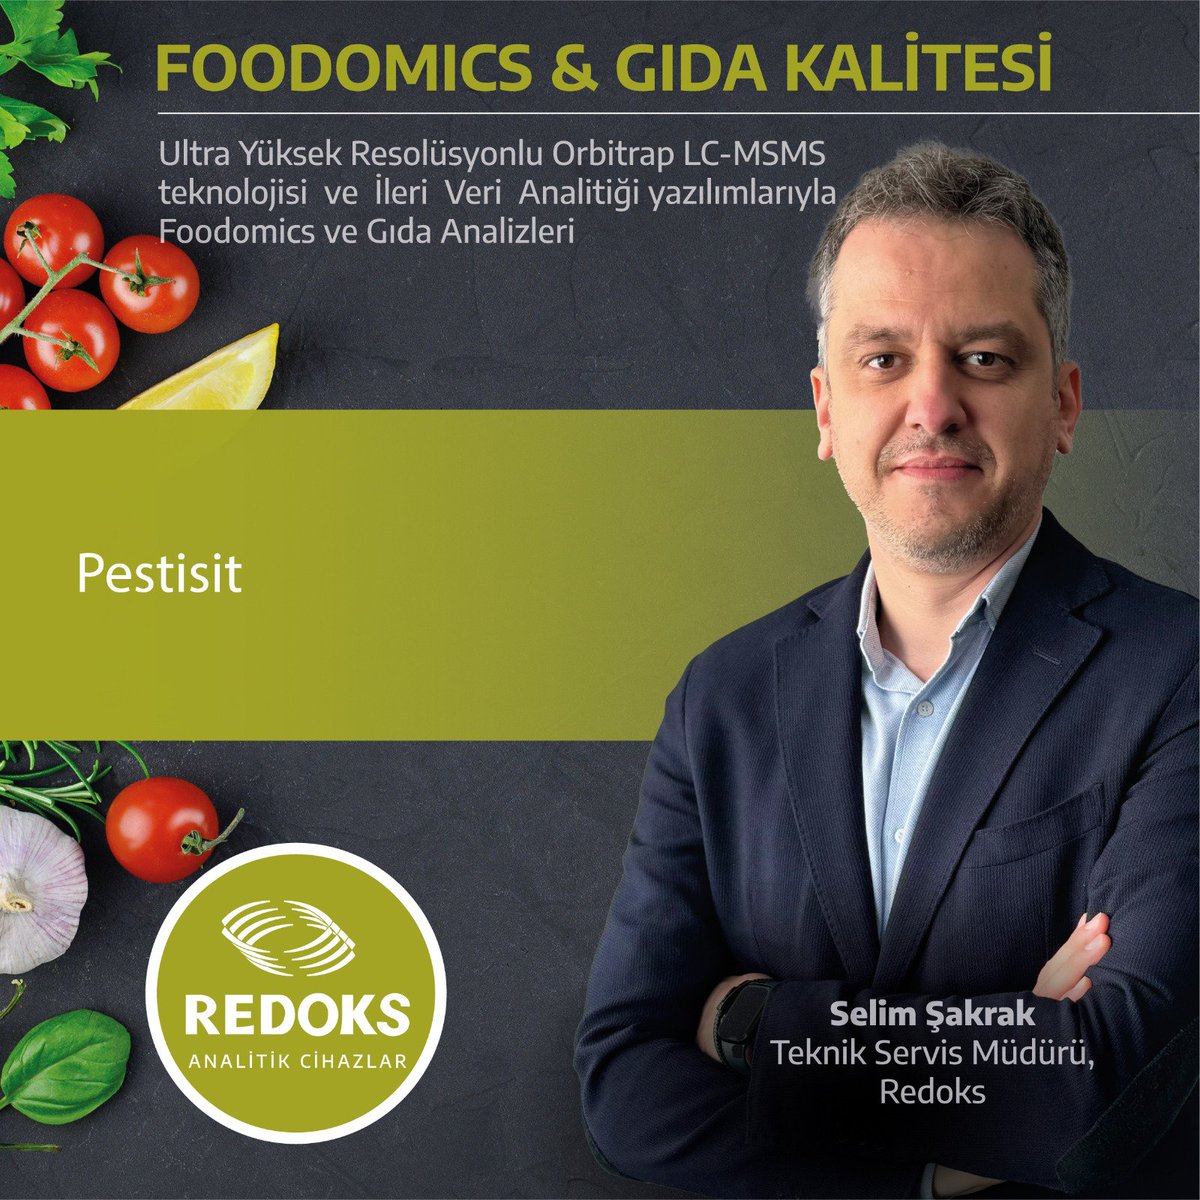 #Foodomics & #GıdaKalitesi Seminerimiz 21.05.2024 Salı Günü 09:00-16:30 saatleri arasında Ataşehir Grand Sheraton Otel'de gerçekleştirilecektir.

#Orbitrap
#HRAM #LCMSMS
#ThermoScientific #gıdaanalizleri
#ICPMS #HPLC #CAD 
#FoodQualty #FoodSafety
#Pesticide #IRMS  #orijin